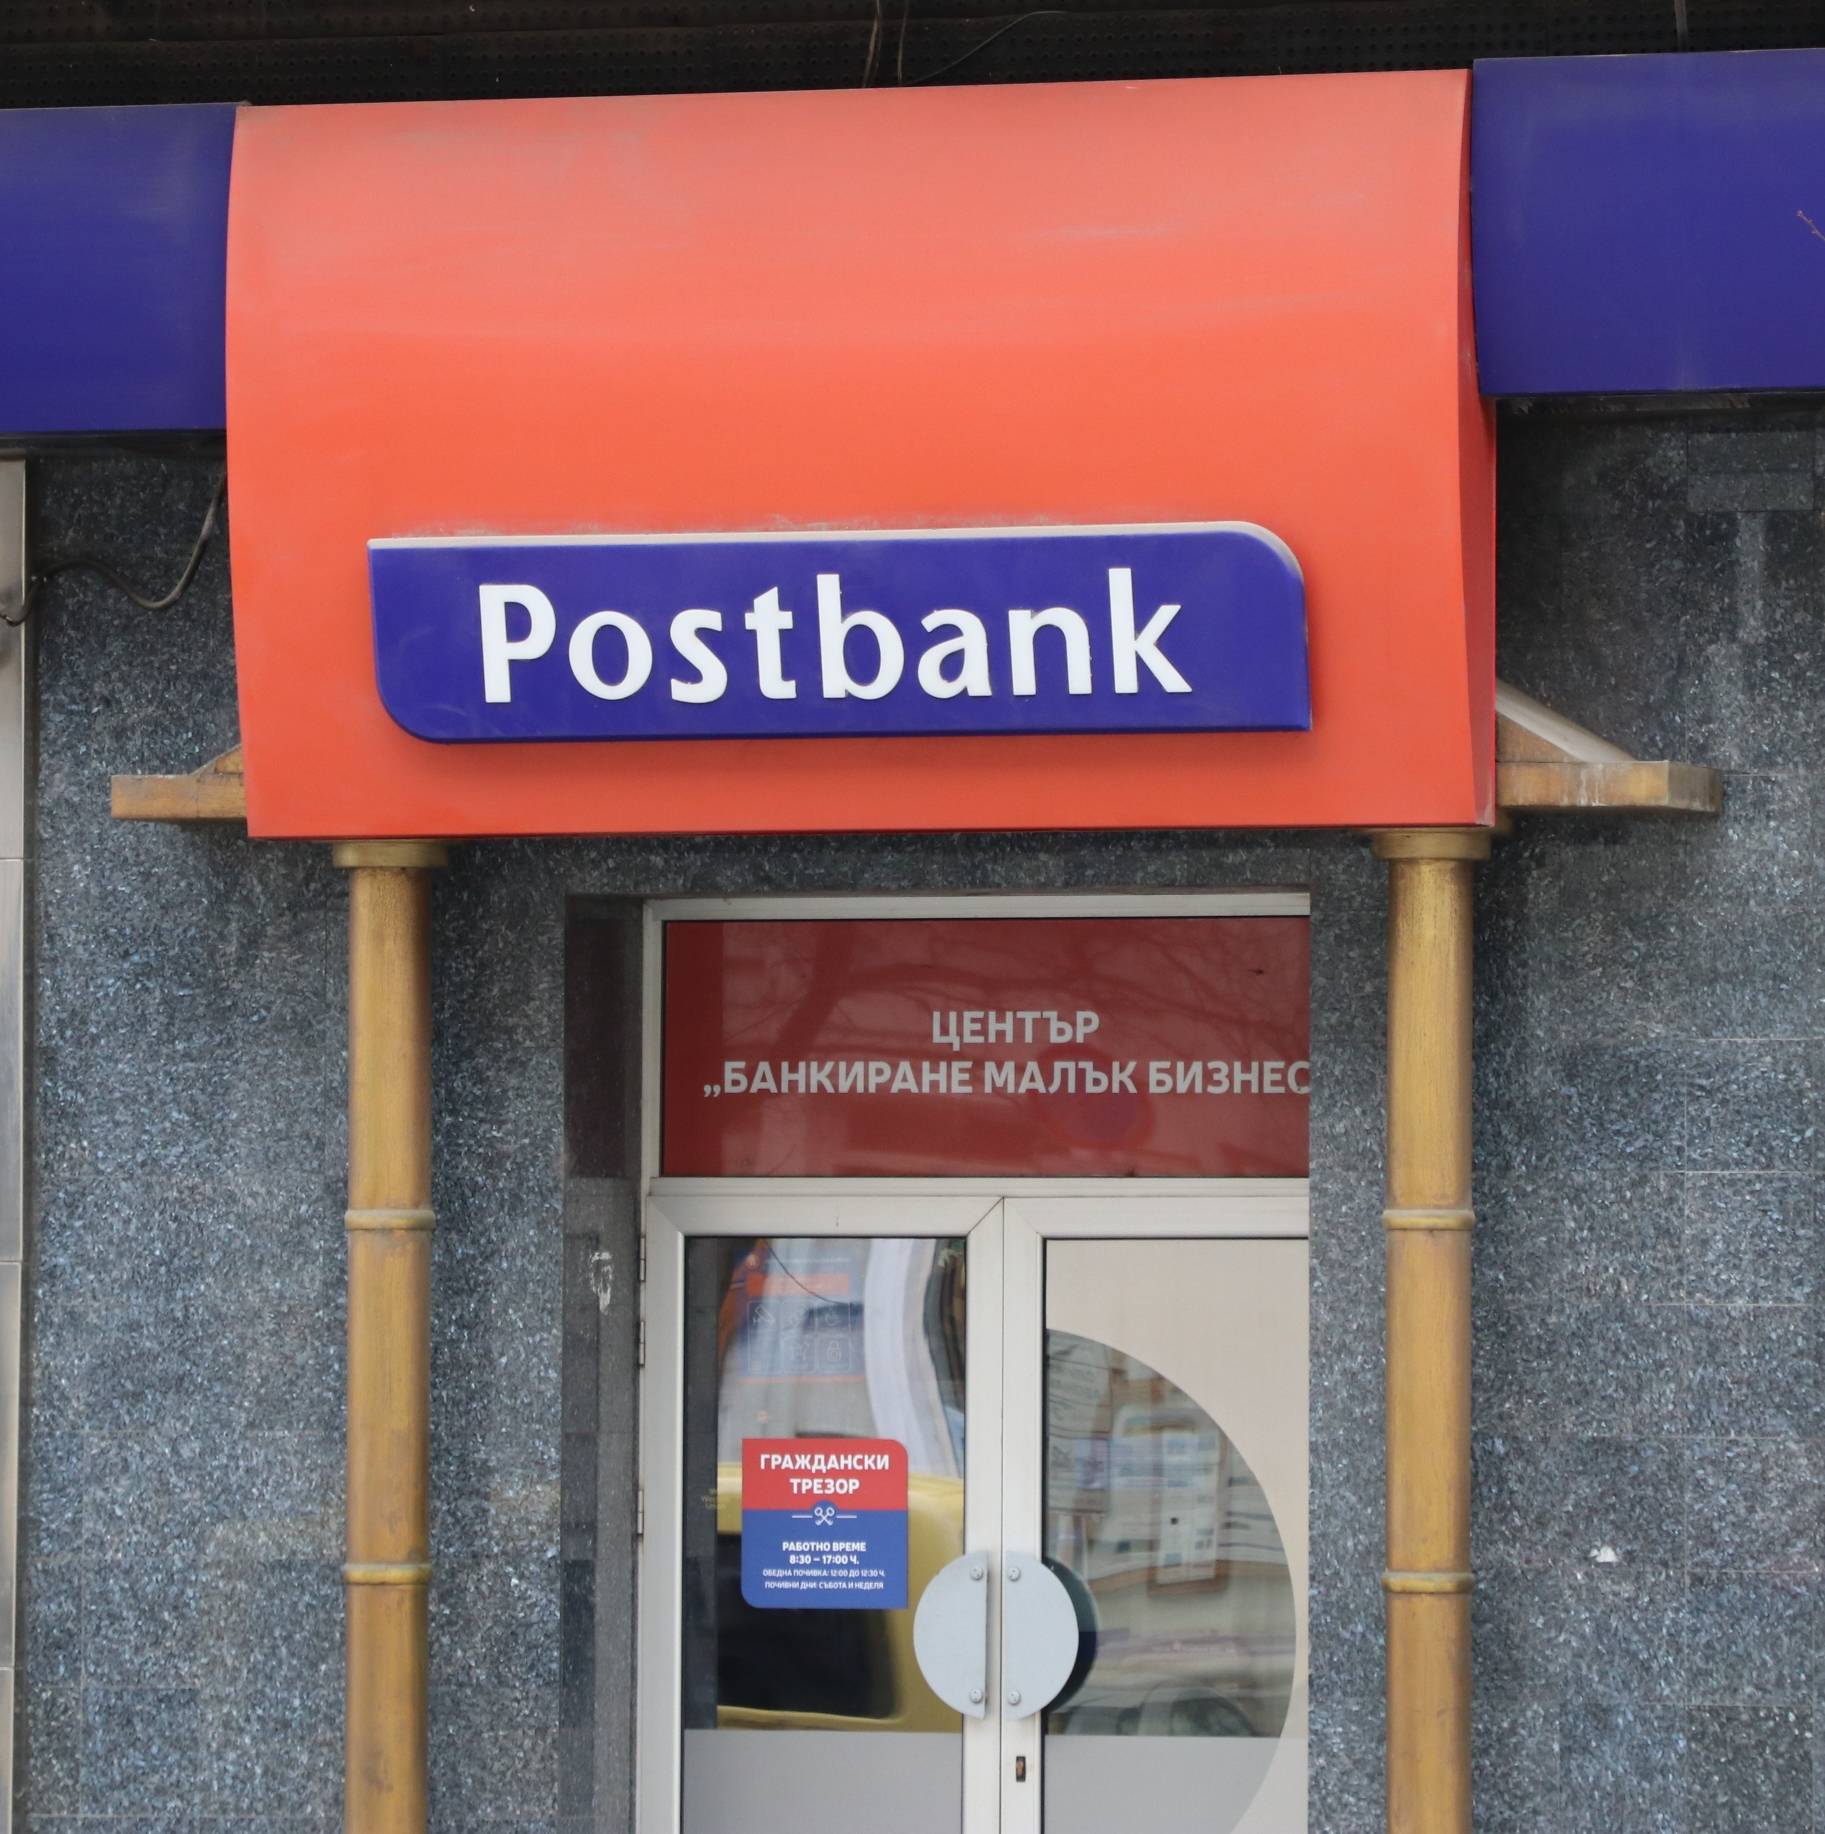  Пост банк, Пощенска банка 